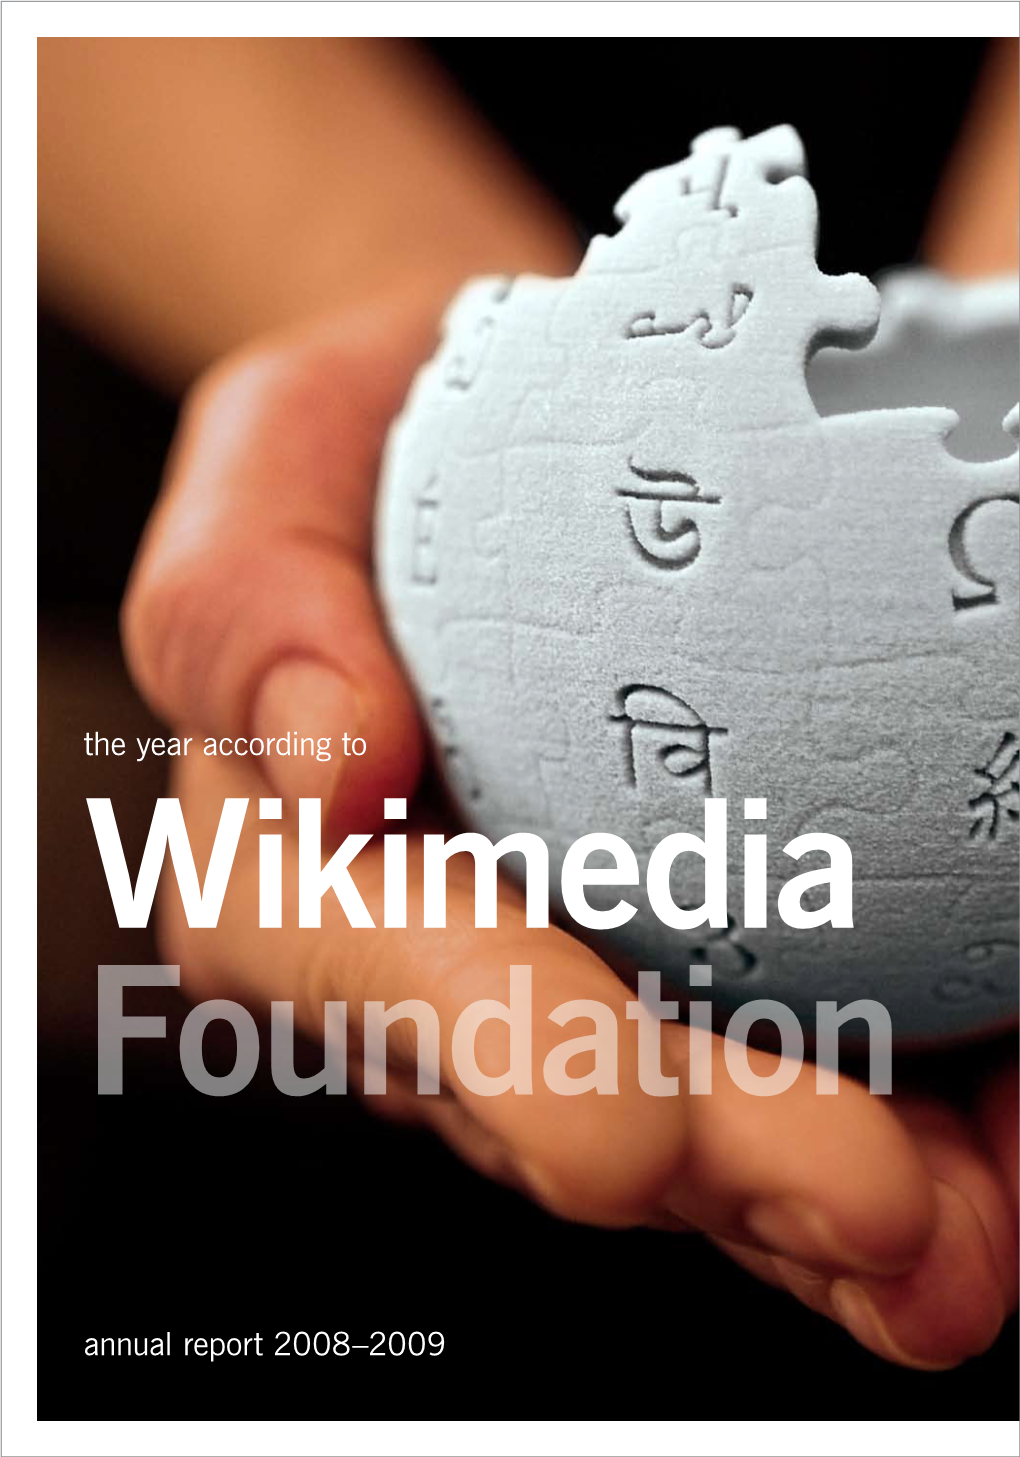 Annual Report 2008-2009 Wikimedia Foundation